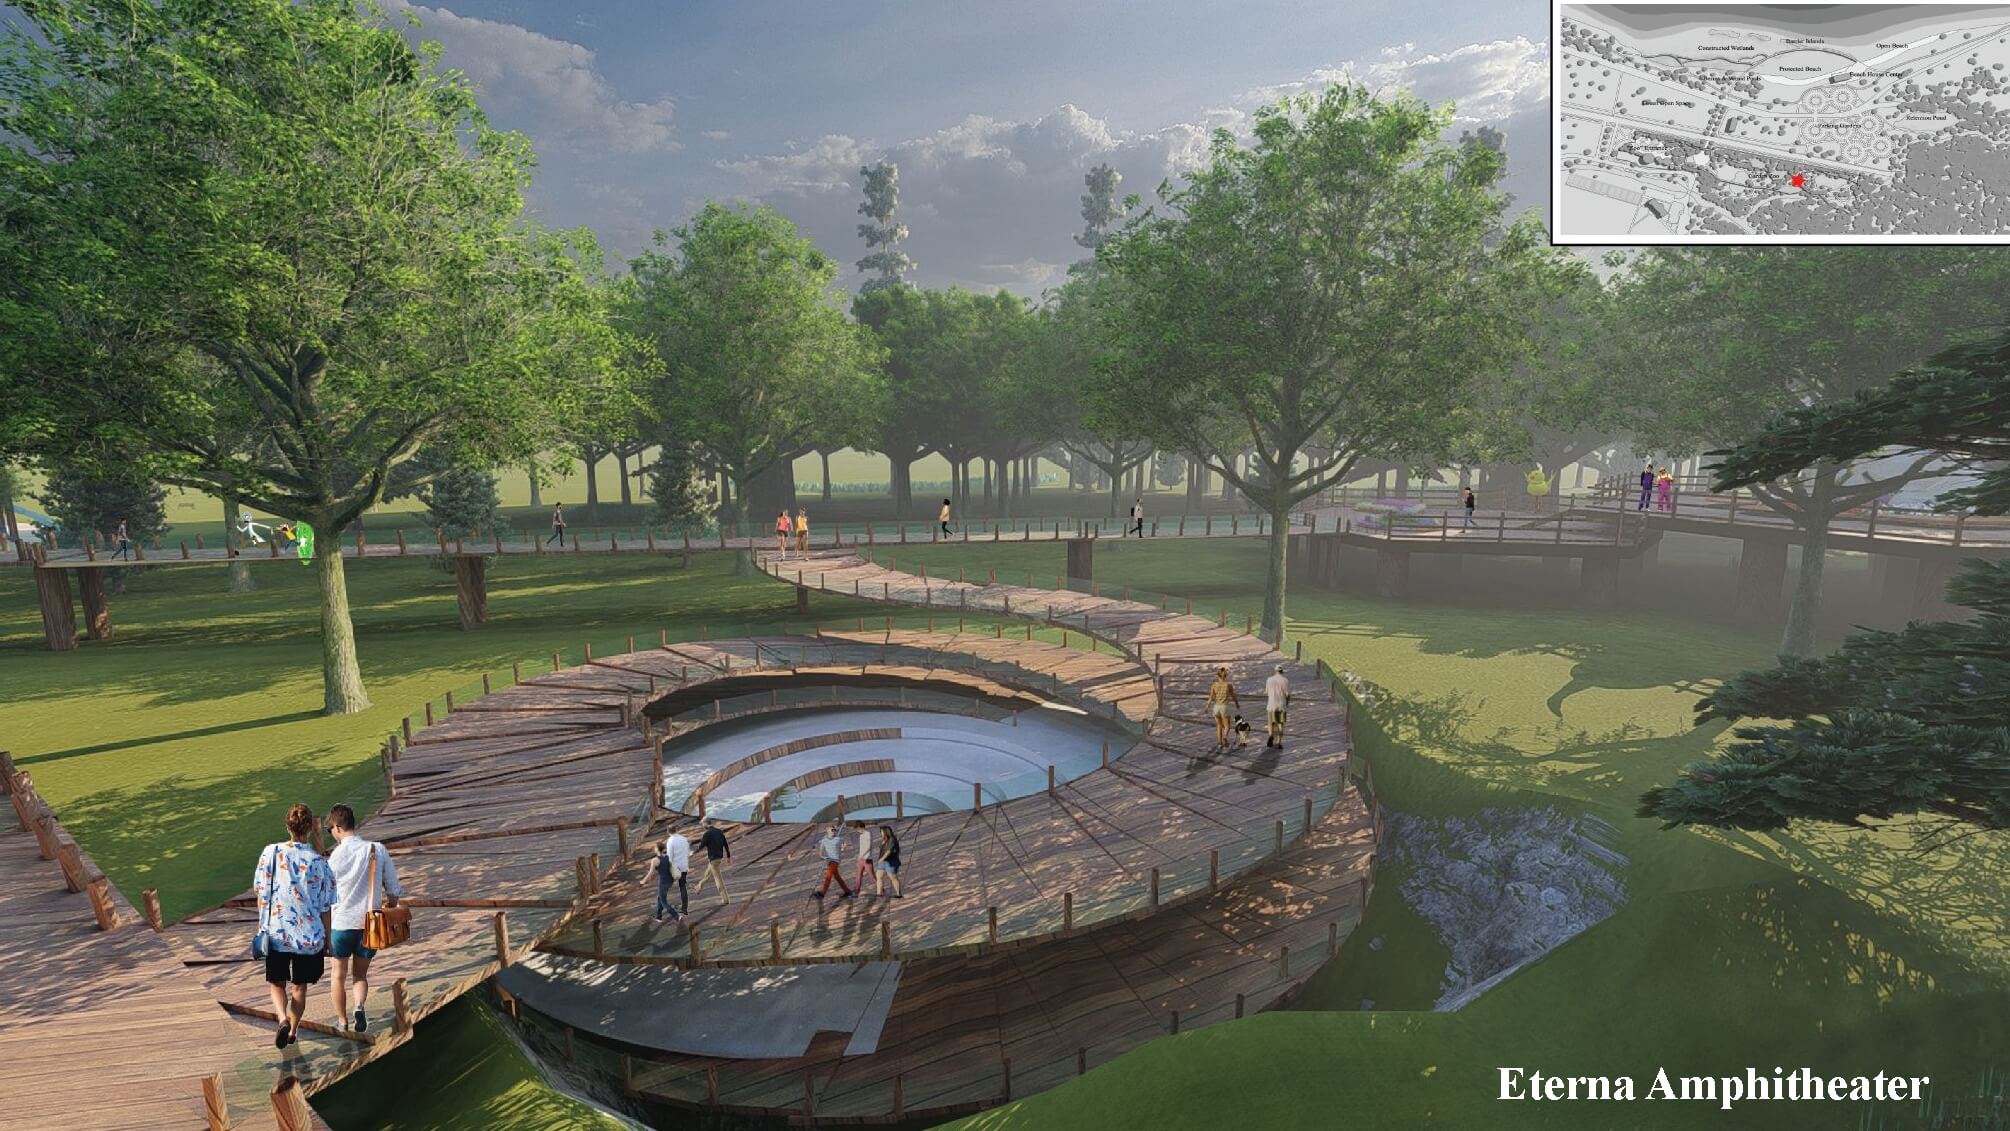 rendering of a sunken outdoor amphitheater